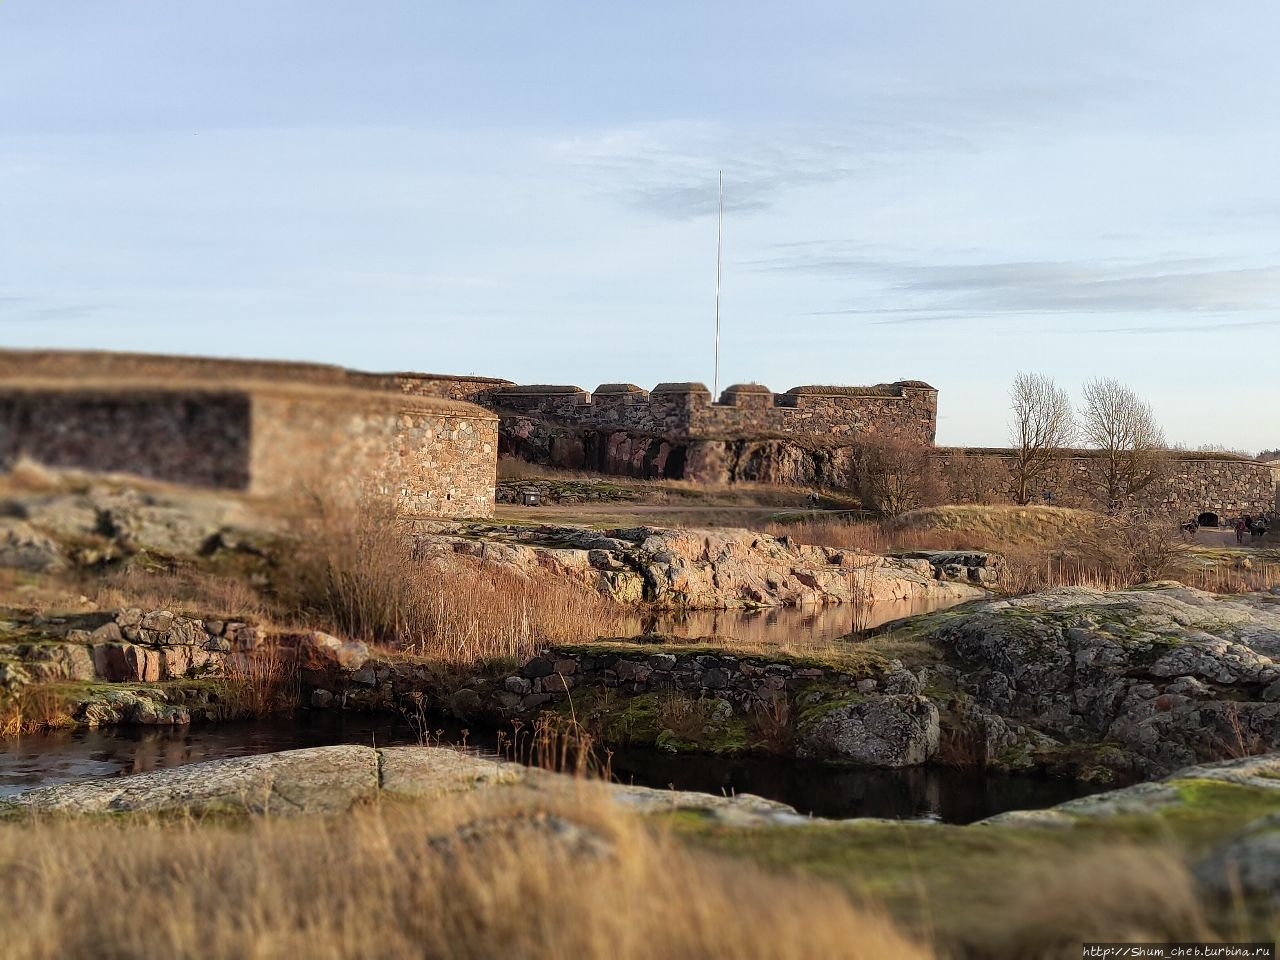 Шведская крепость в финской столице